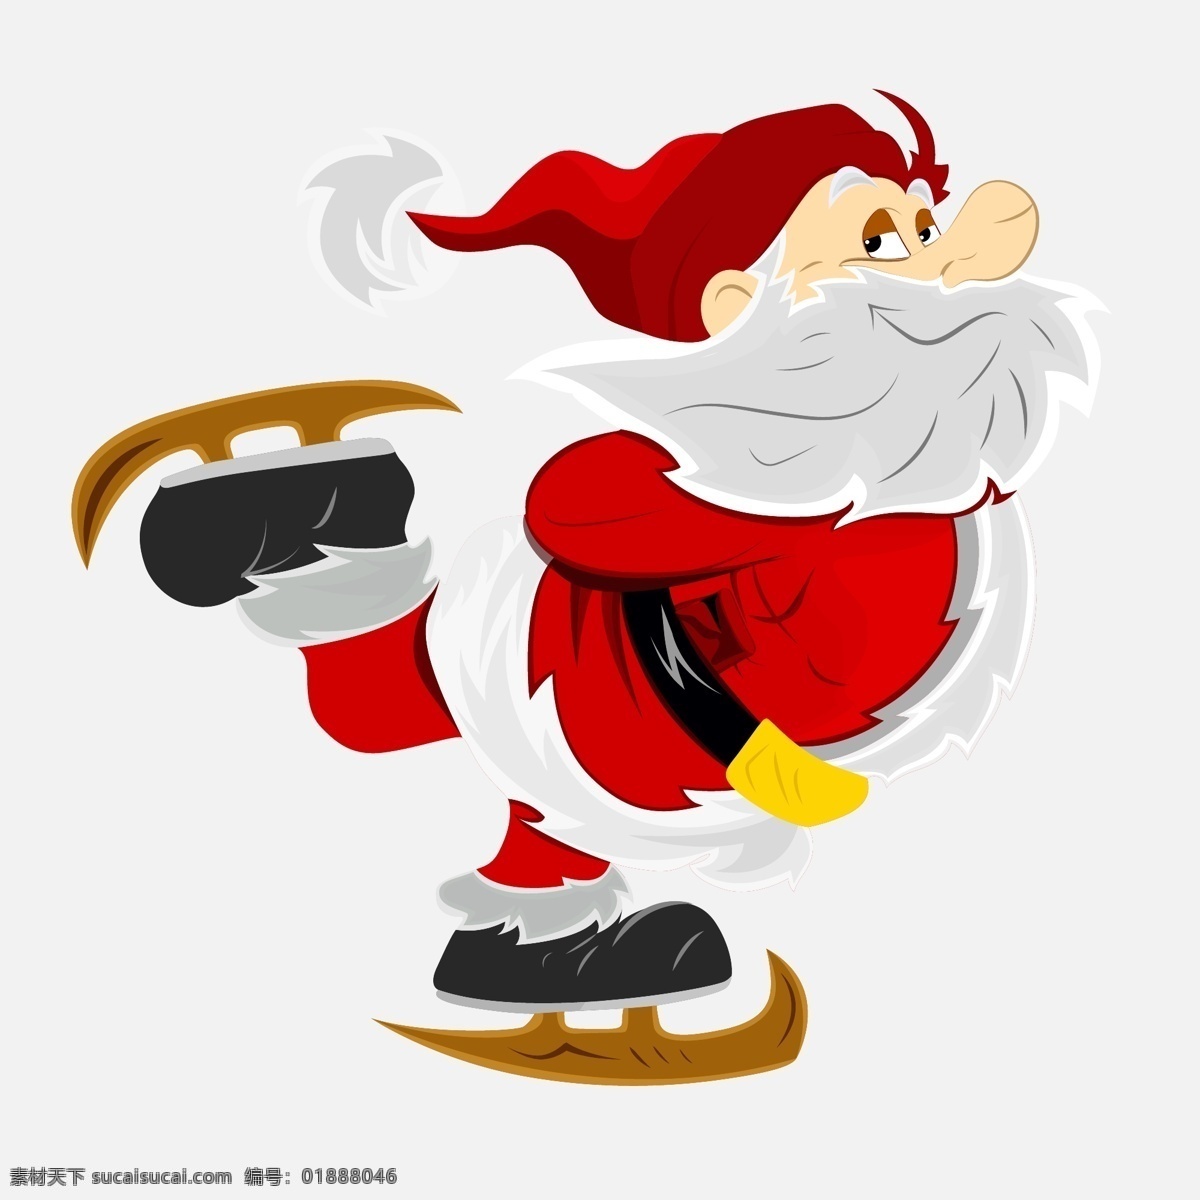 溜冰 圣诞老人 矢量 卡通 矢量素材 设计素材 背景素材